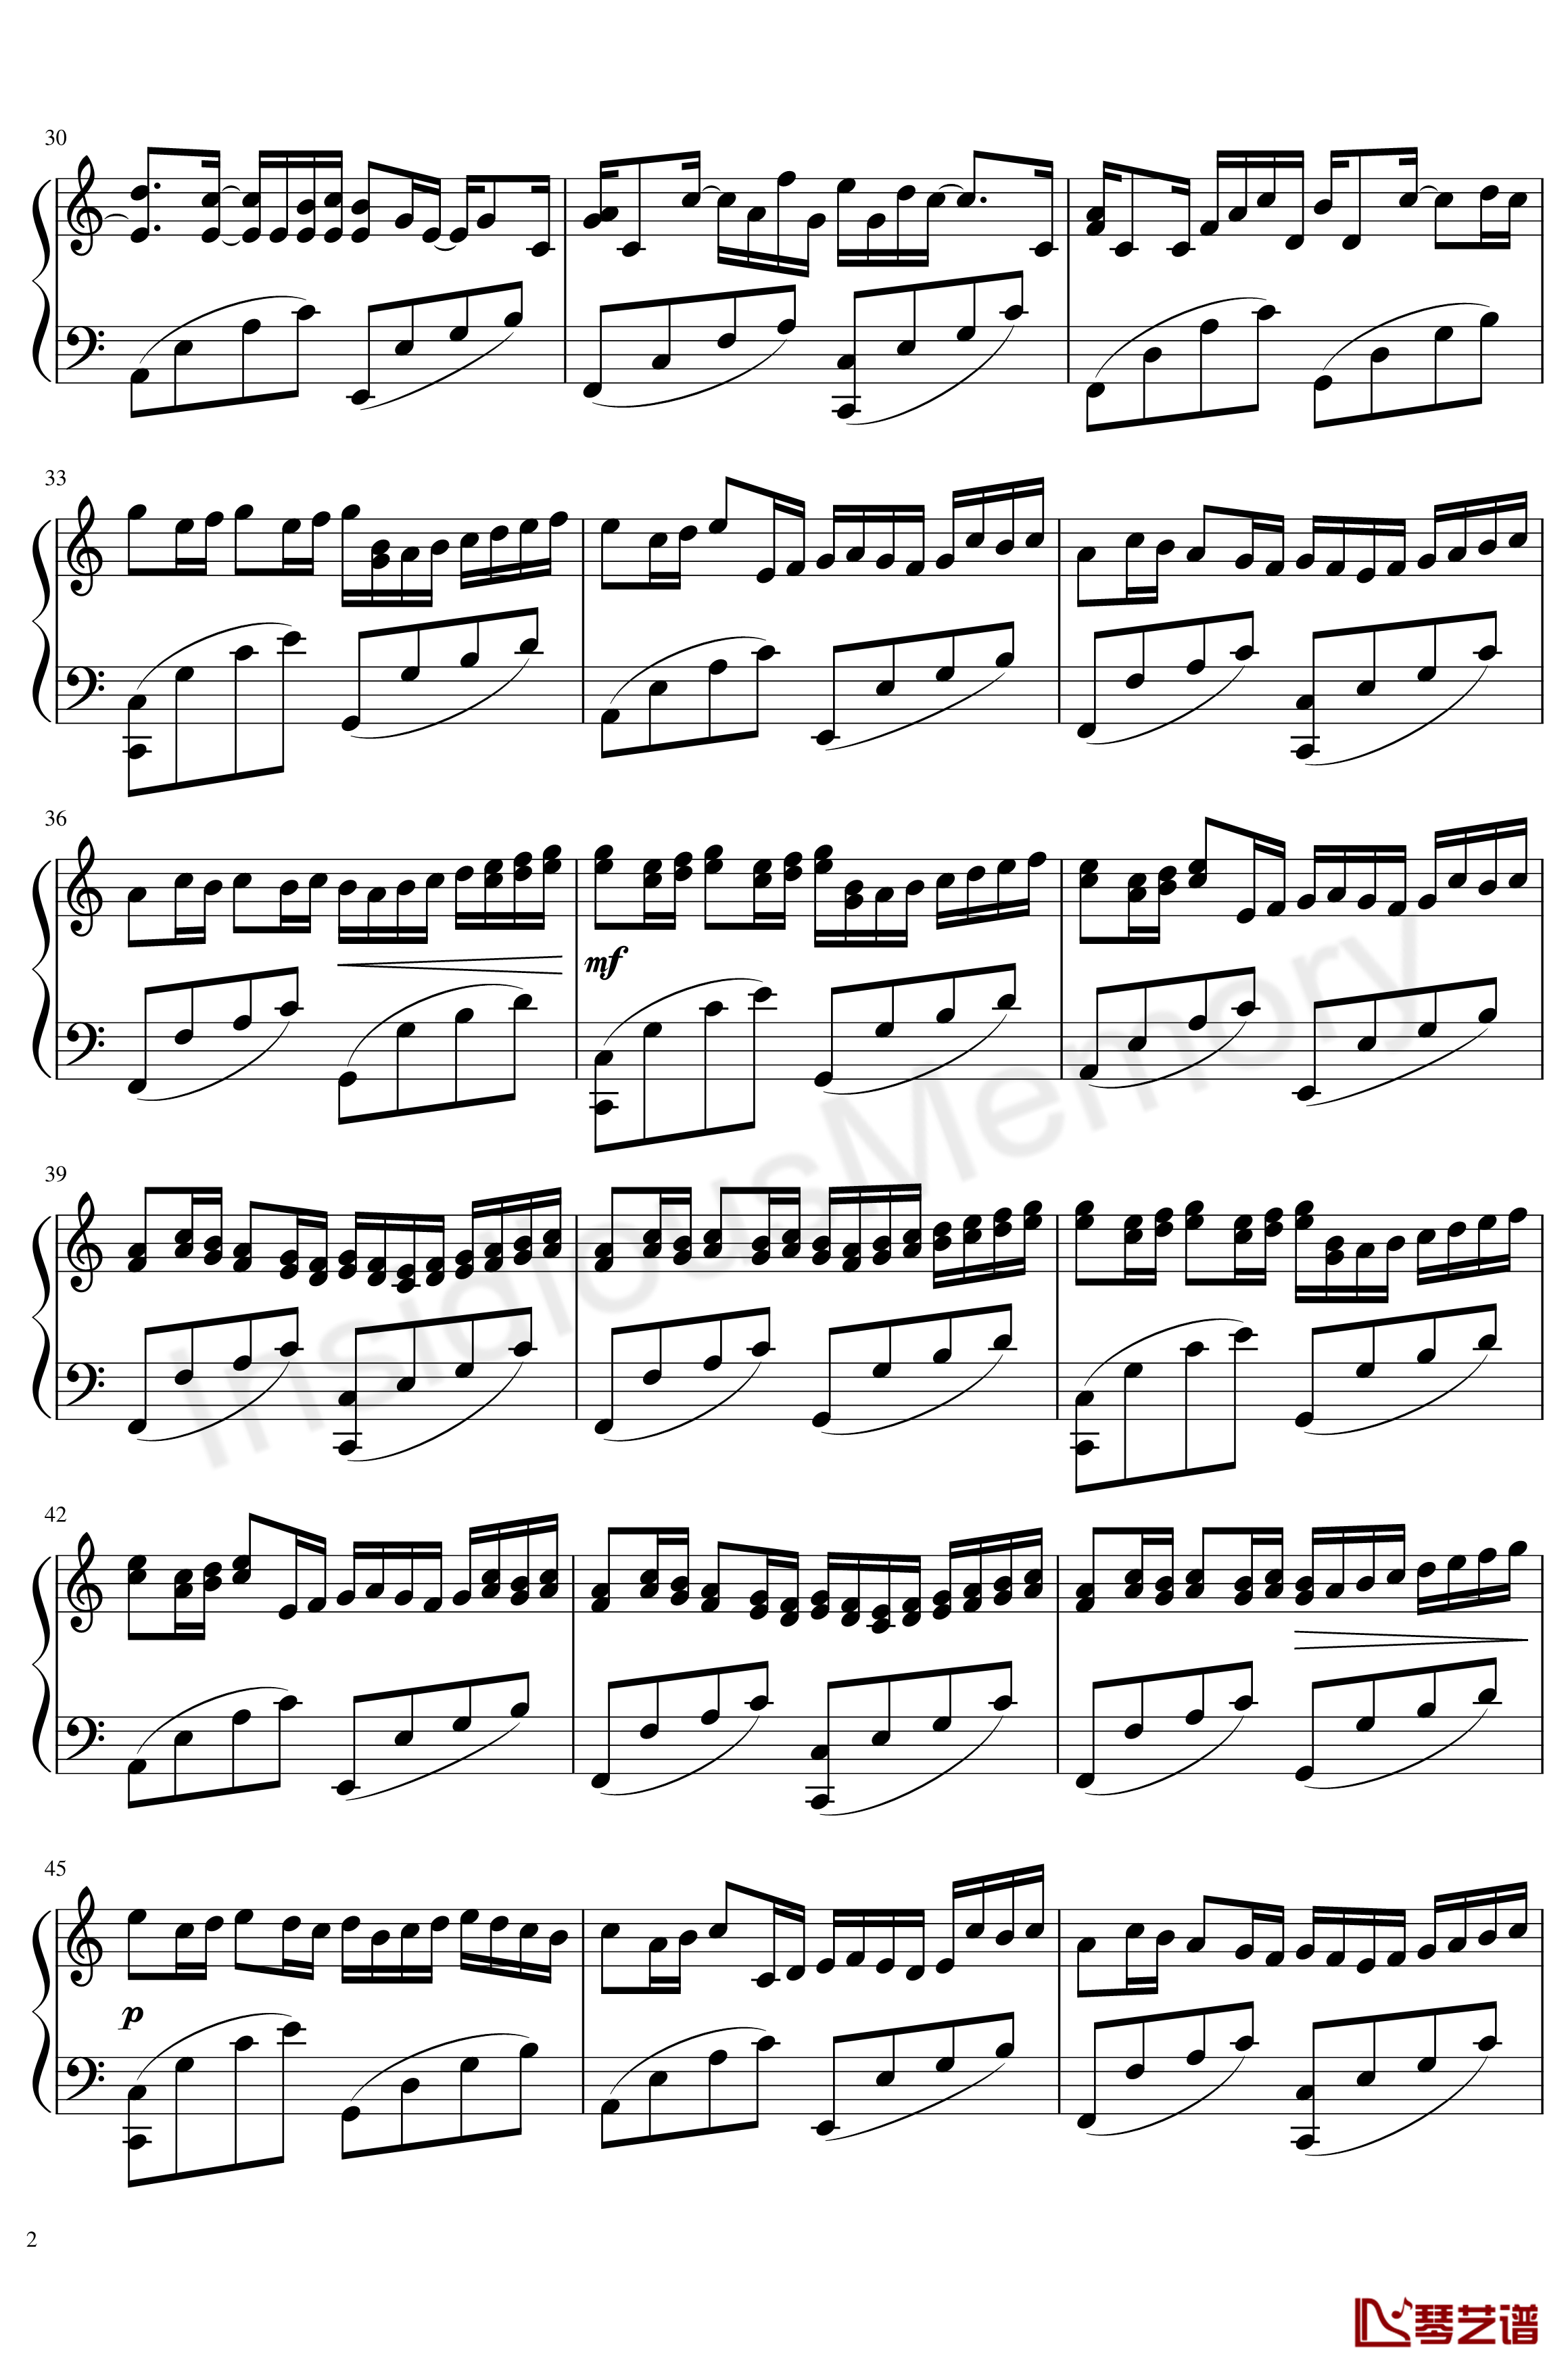 卡农变奏曲钢琴谱-Variations on the Canon-帕赫贝尔-Pachelbel2